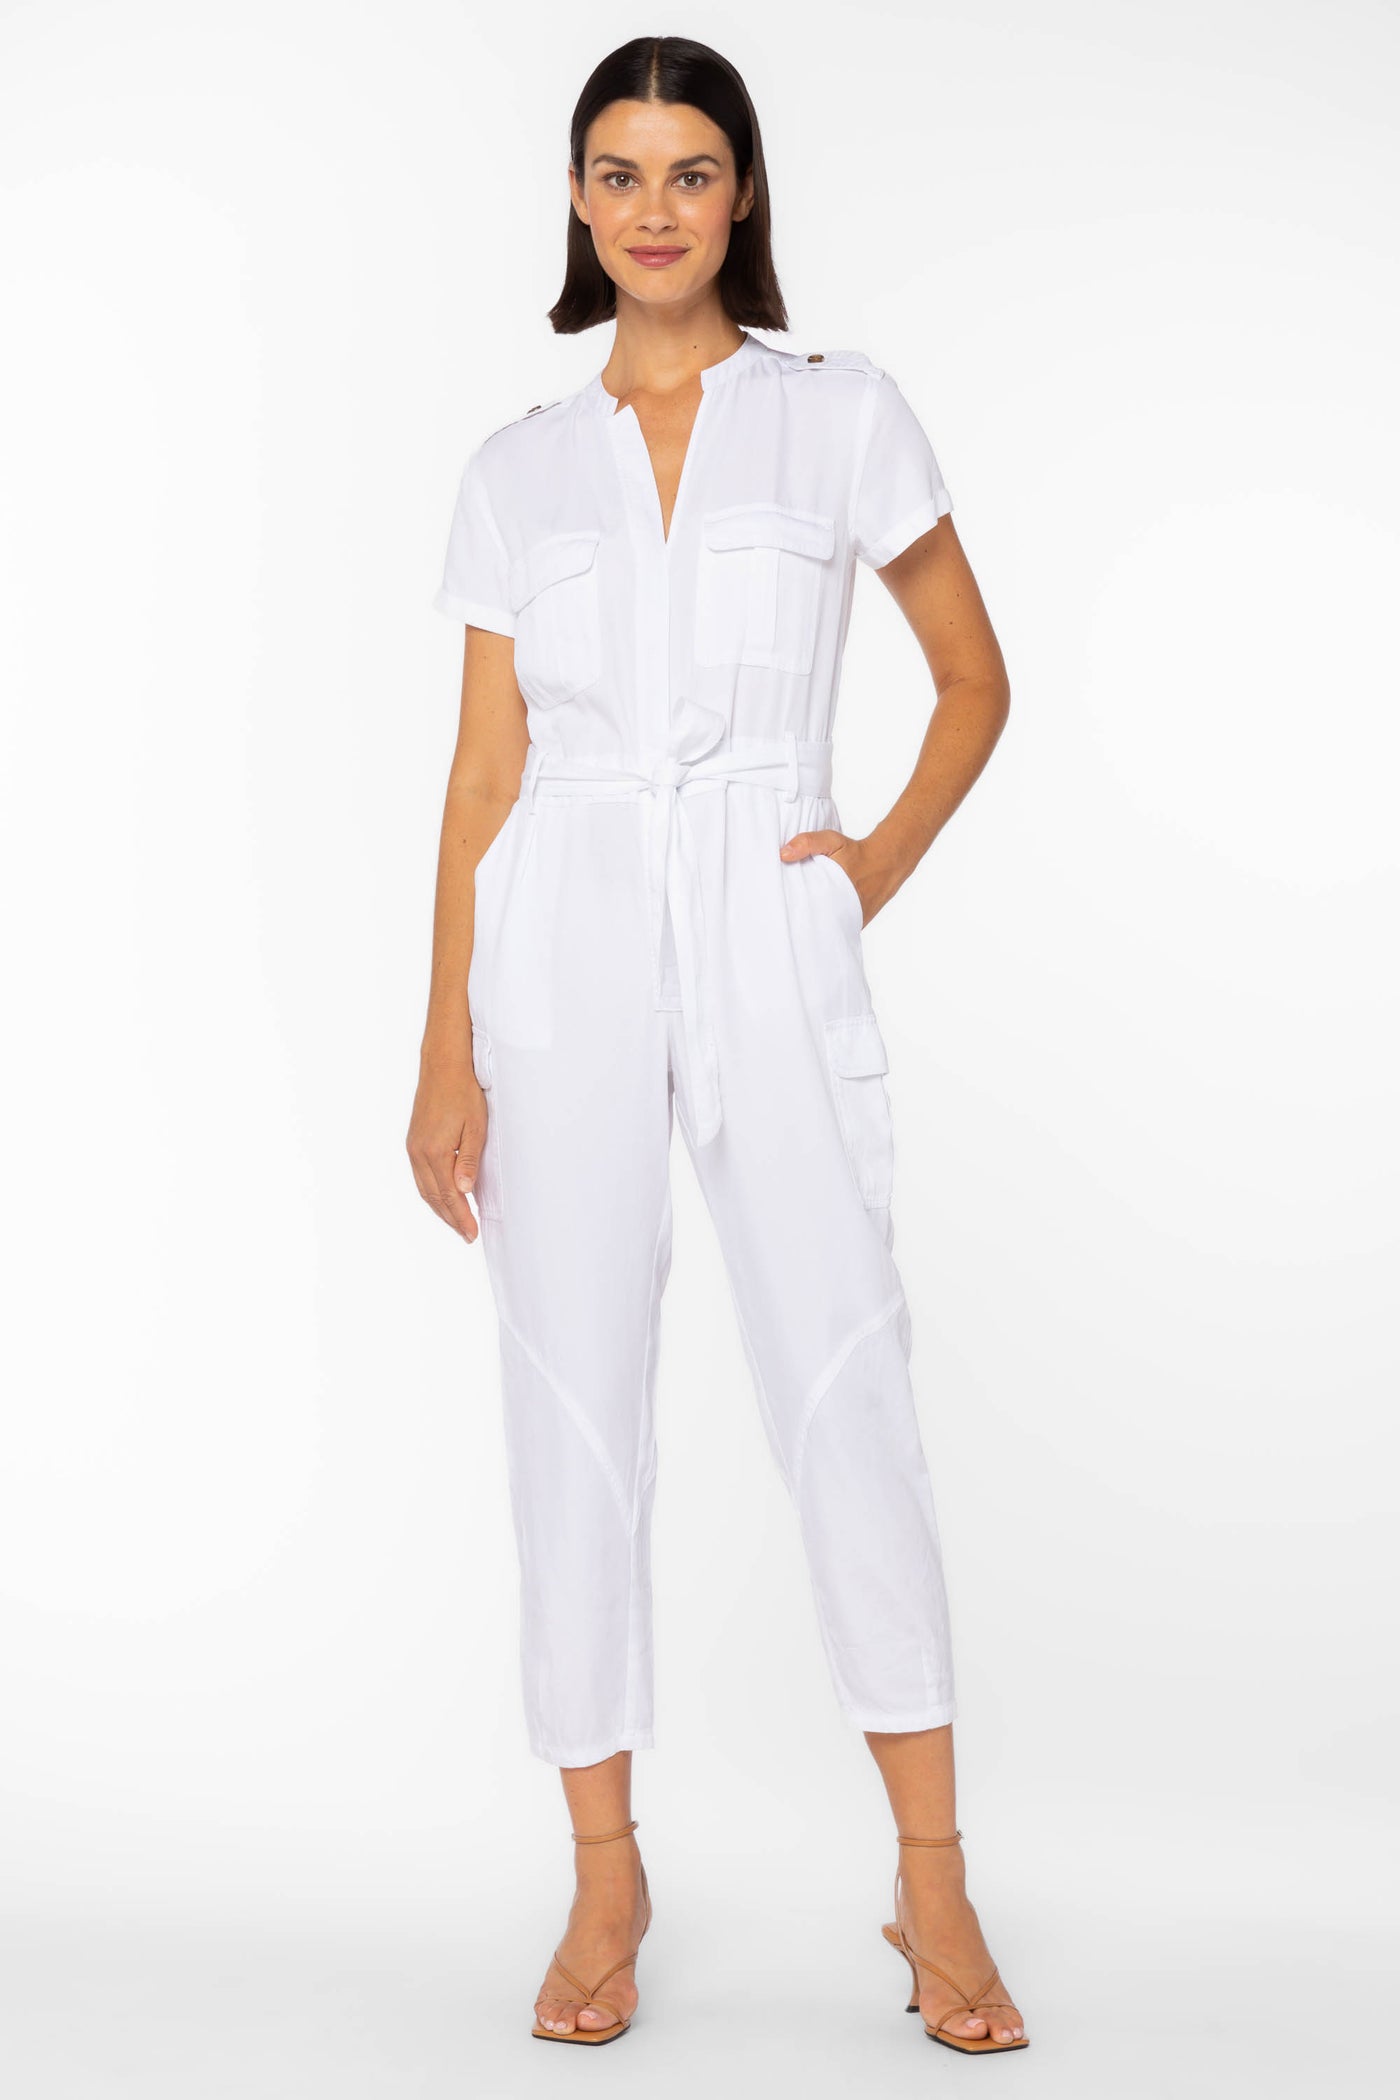 Greyson White Jumpsuit by Velvet Heart Clothing: Greyson White Jumpsuit